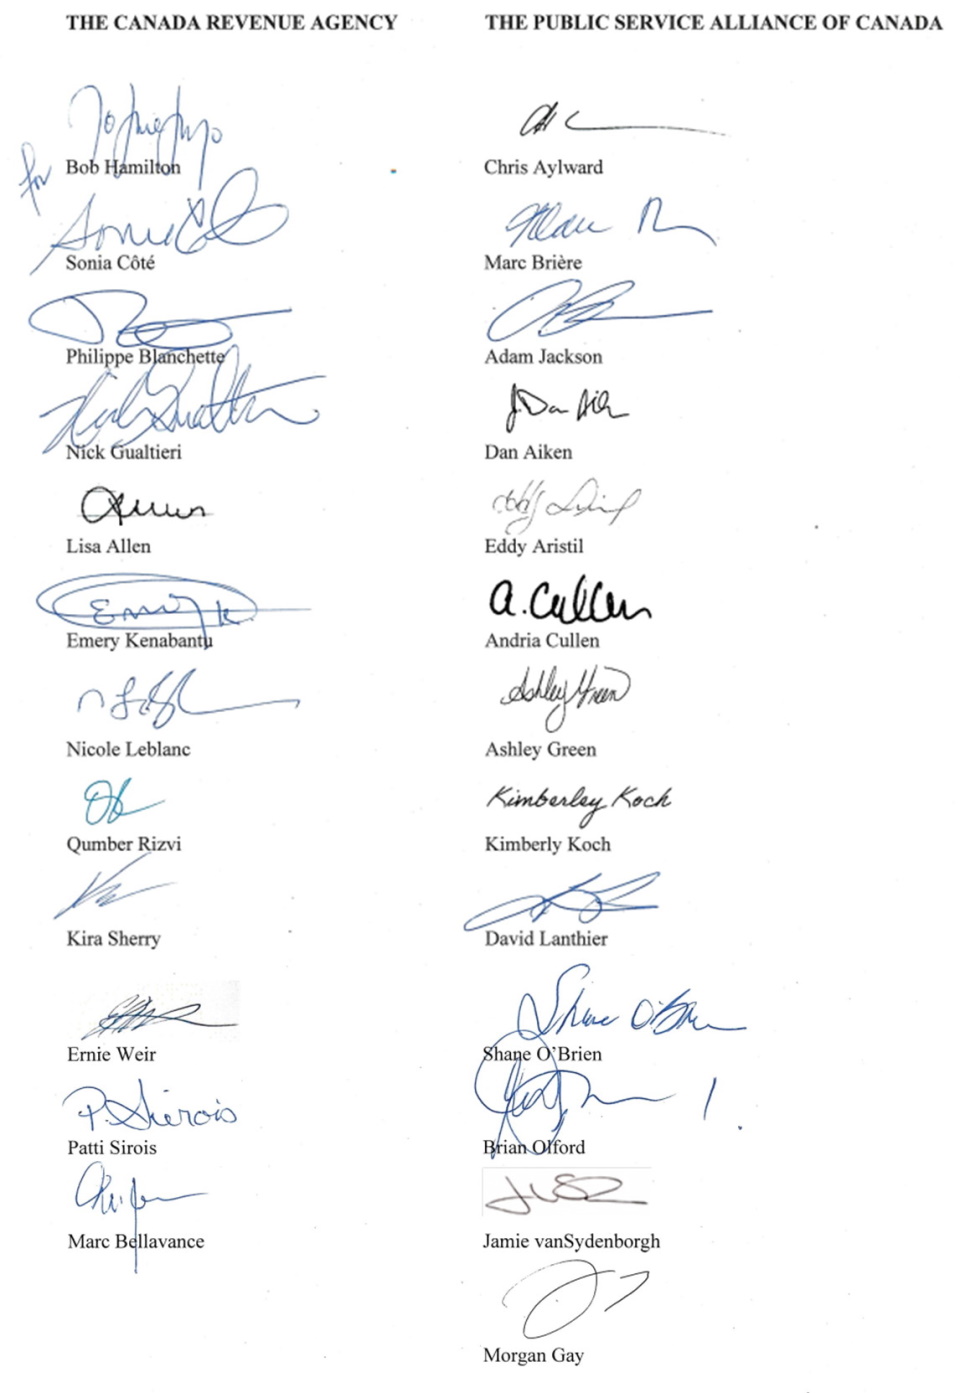 PSAC and CRA signatures - See description below